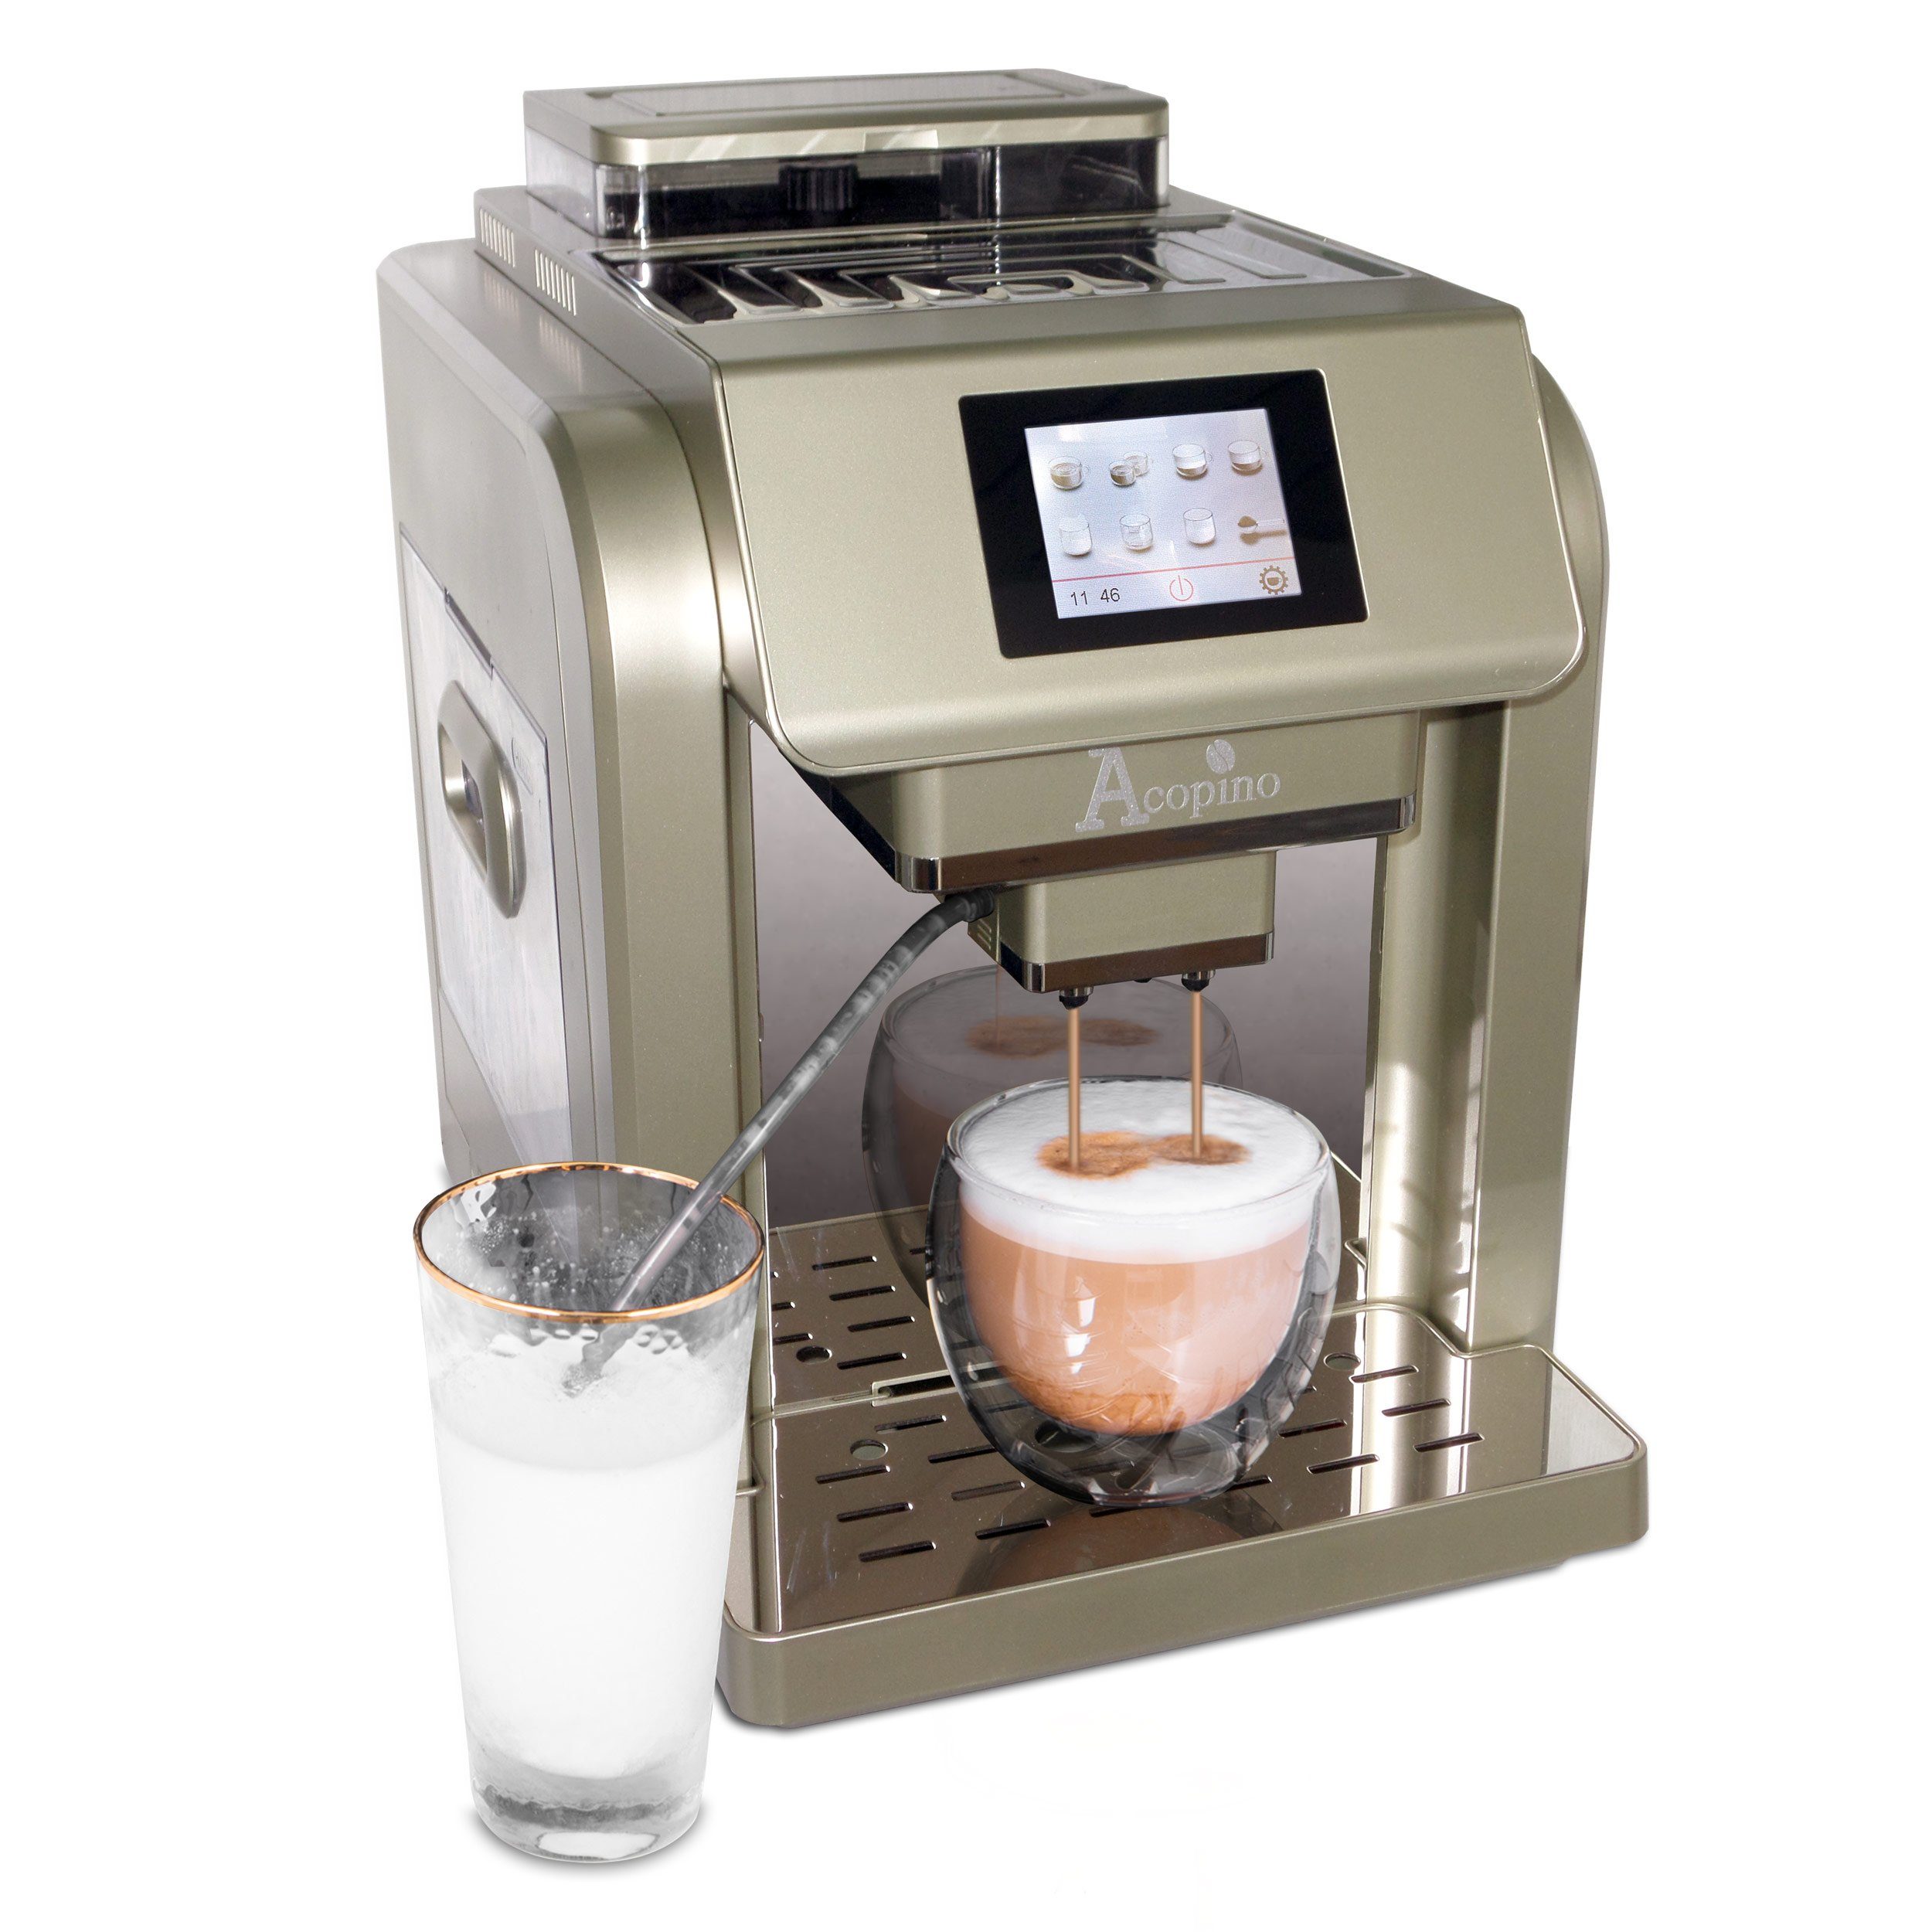 One Besonders One-Touch-Bedienung Kaffeevollautomat einfache durch Monza Acopino Touch, Champagner Kaffeeherstellung